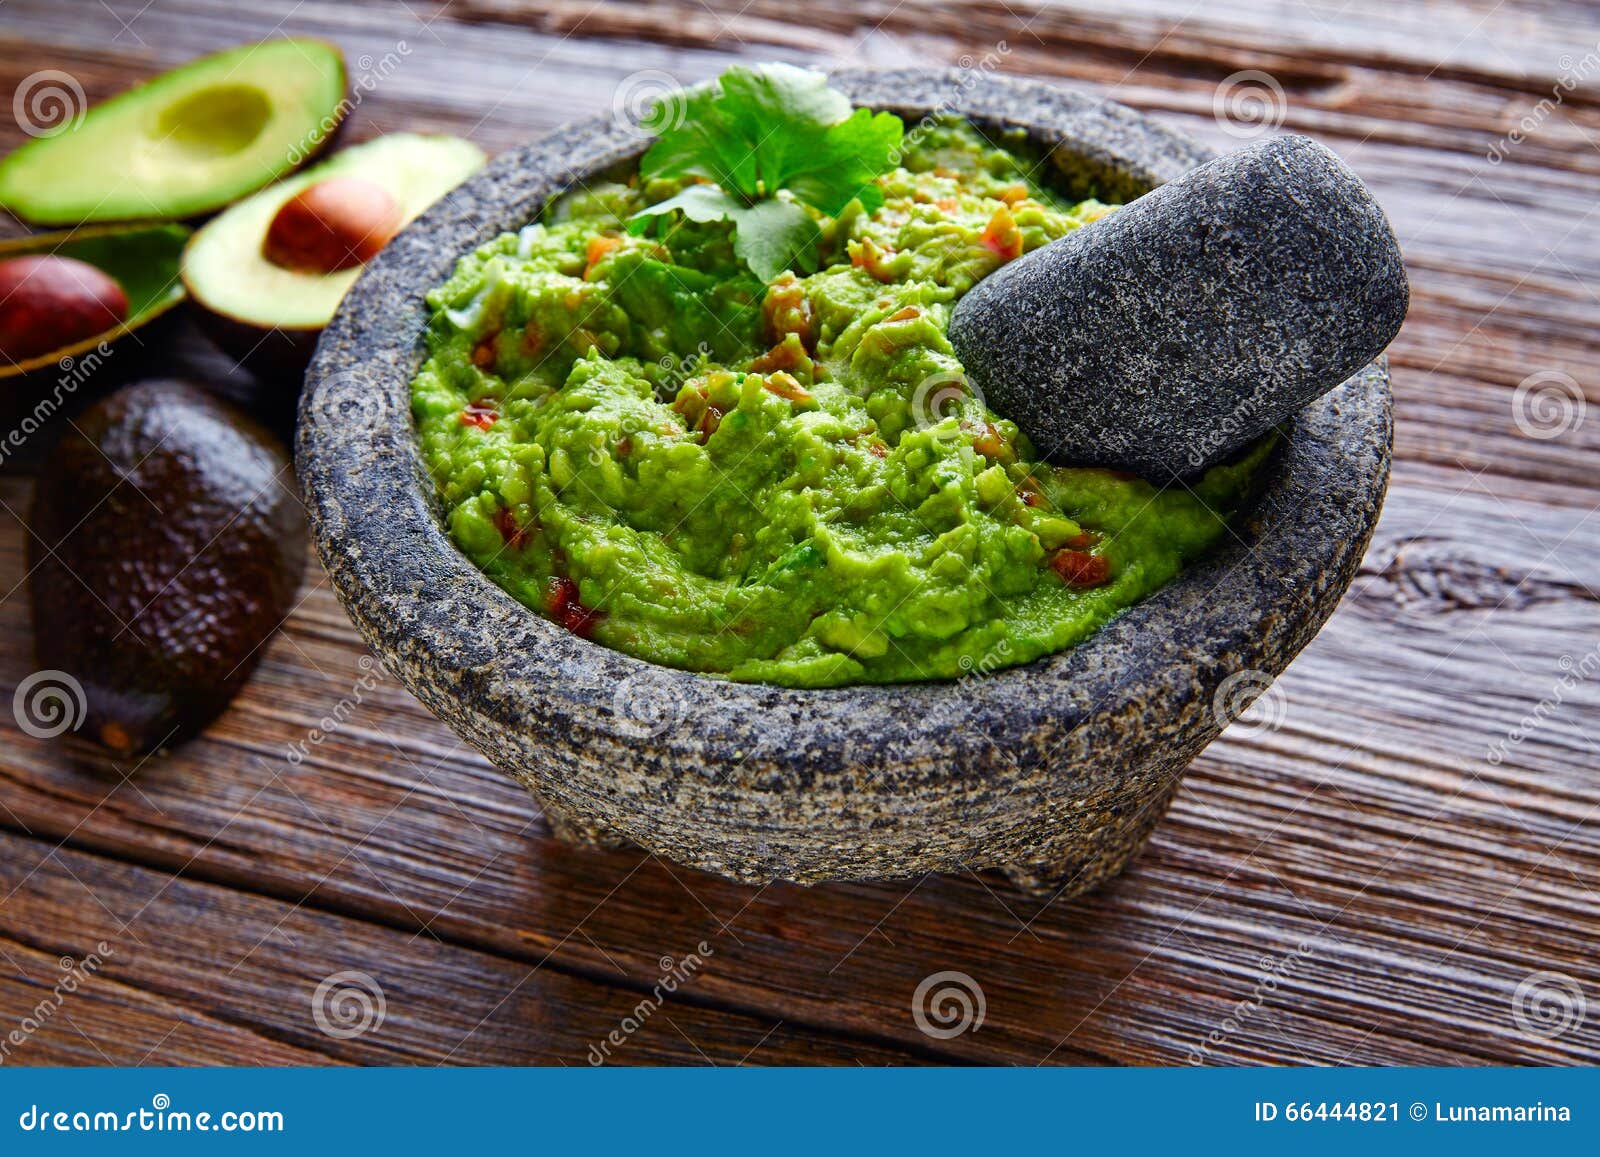 avocado guacamole on molcajete real mexican